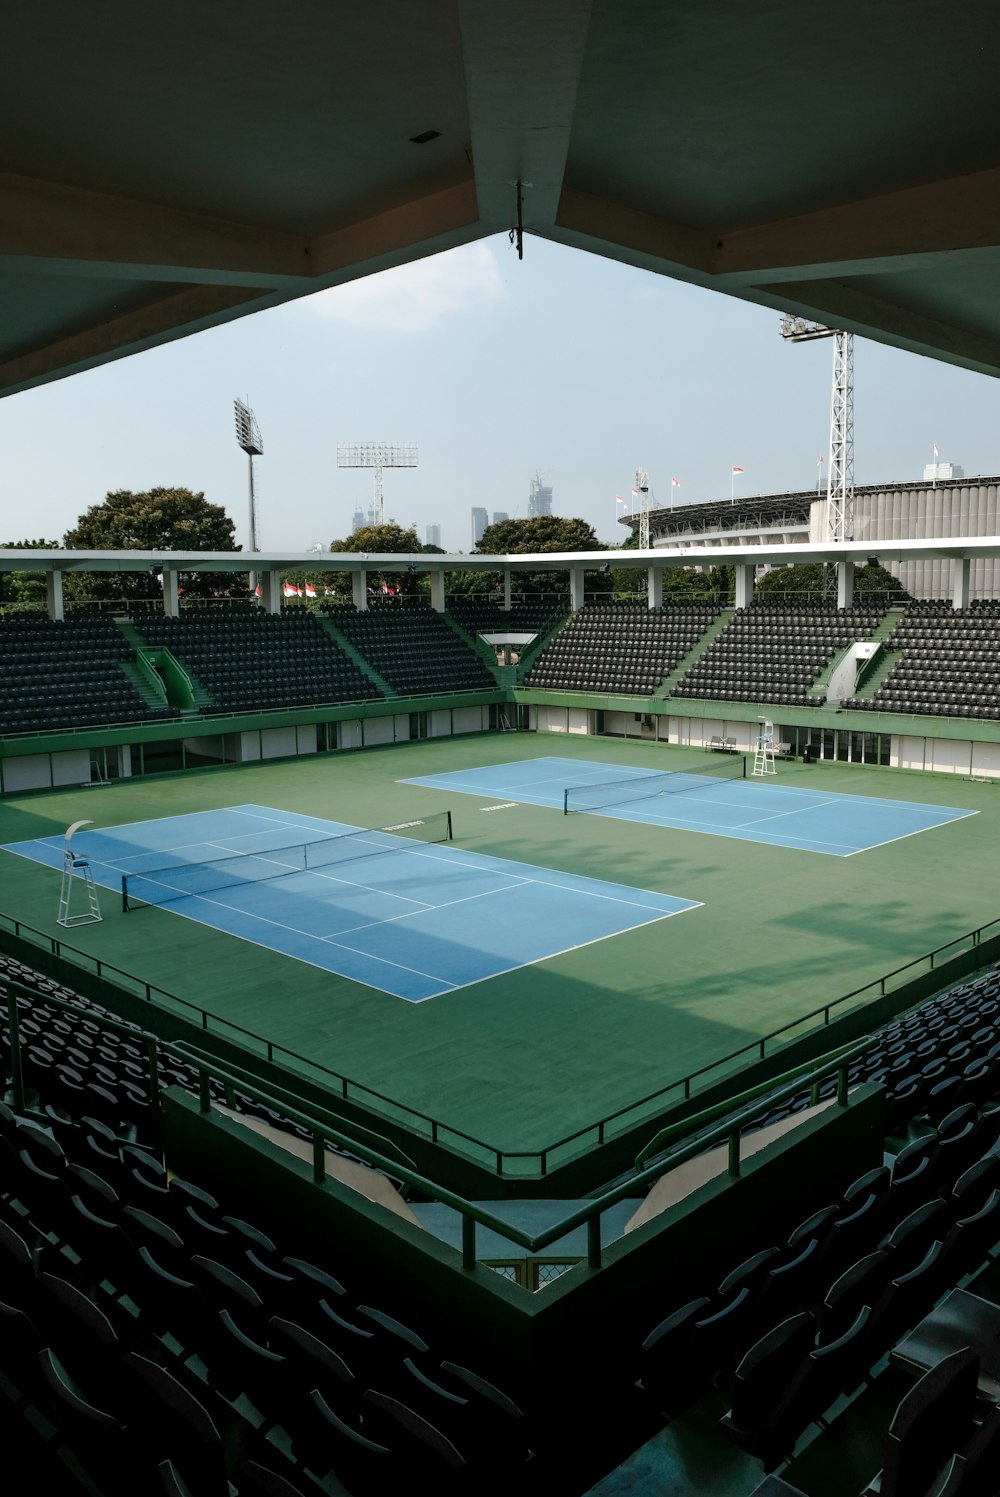 un court de tennis vide avec vue sur les tribunes